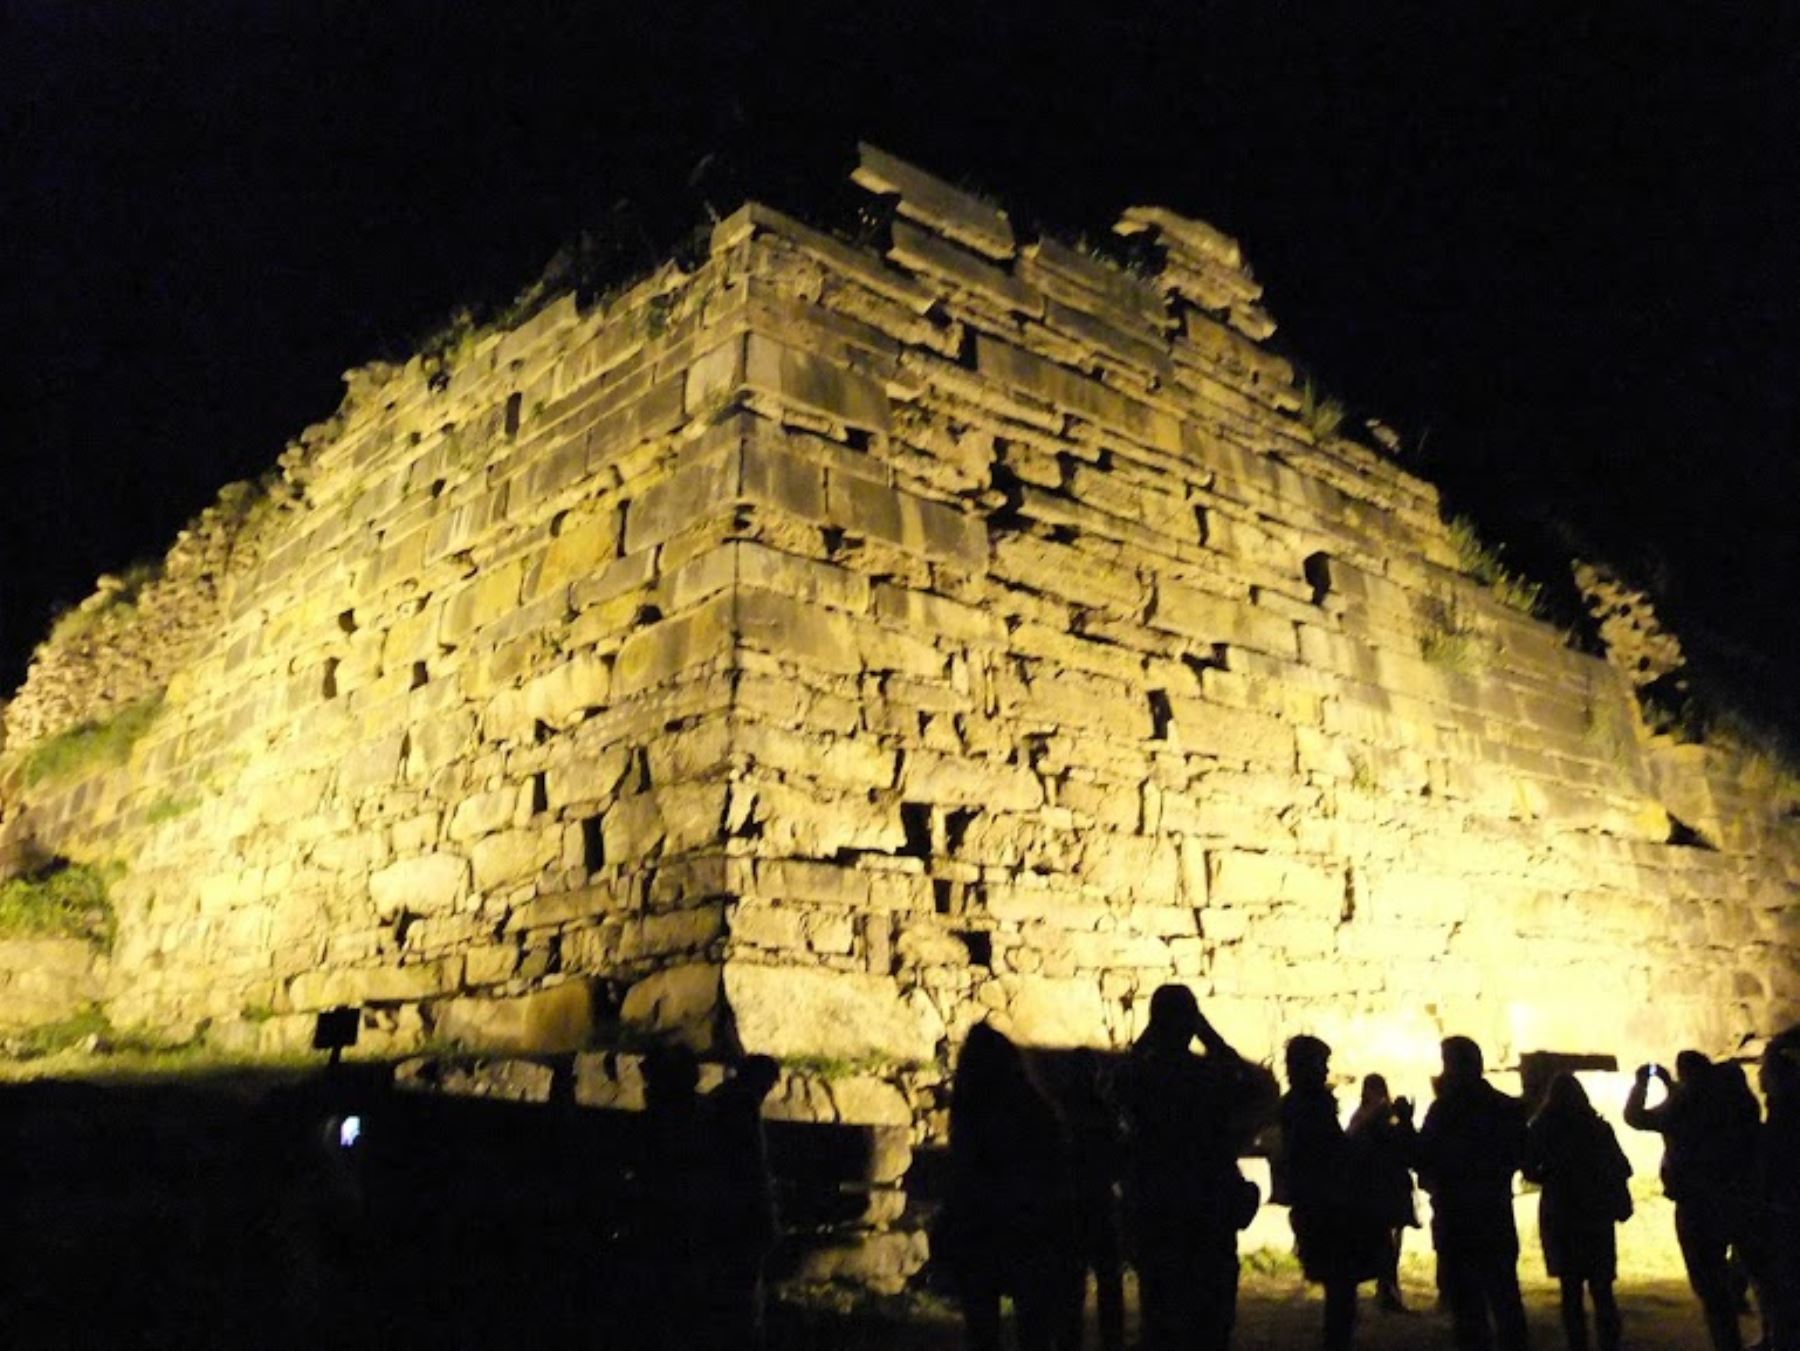 El Ministerio de Cultura aprobó las visitas nocturnas al monumento arqueológico Chavín de Huántar, ubicado en la provincia de Huari, región Áncash, en seis fechas especiales durante el segundo semestre de este año.